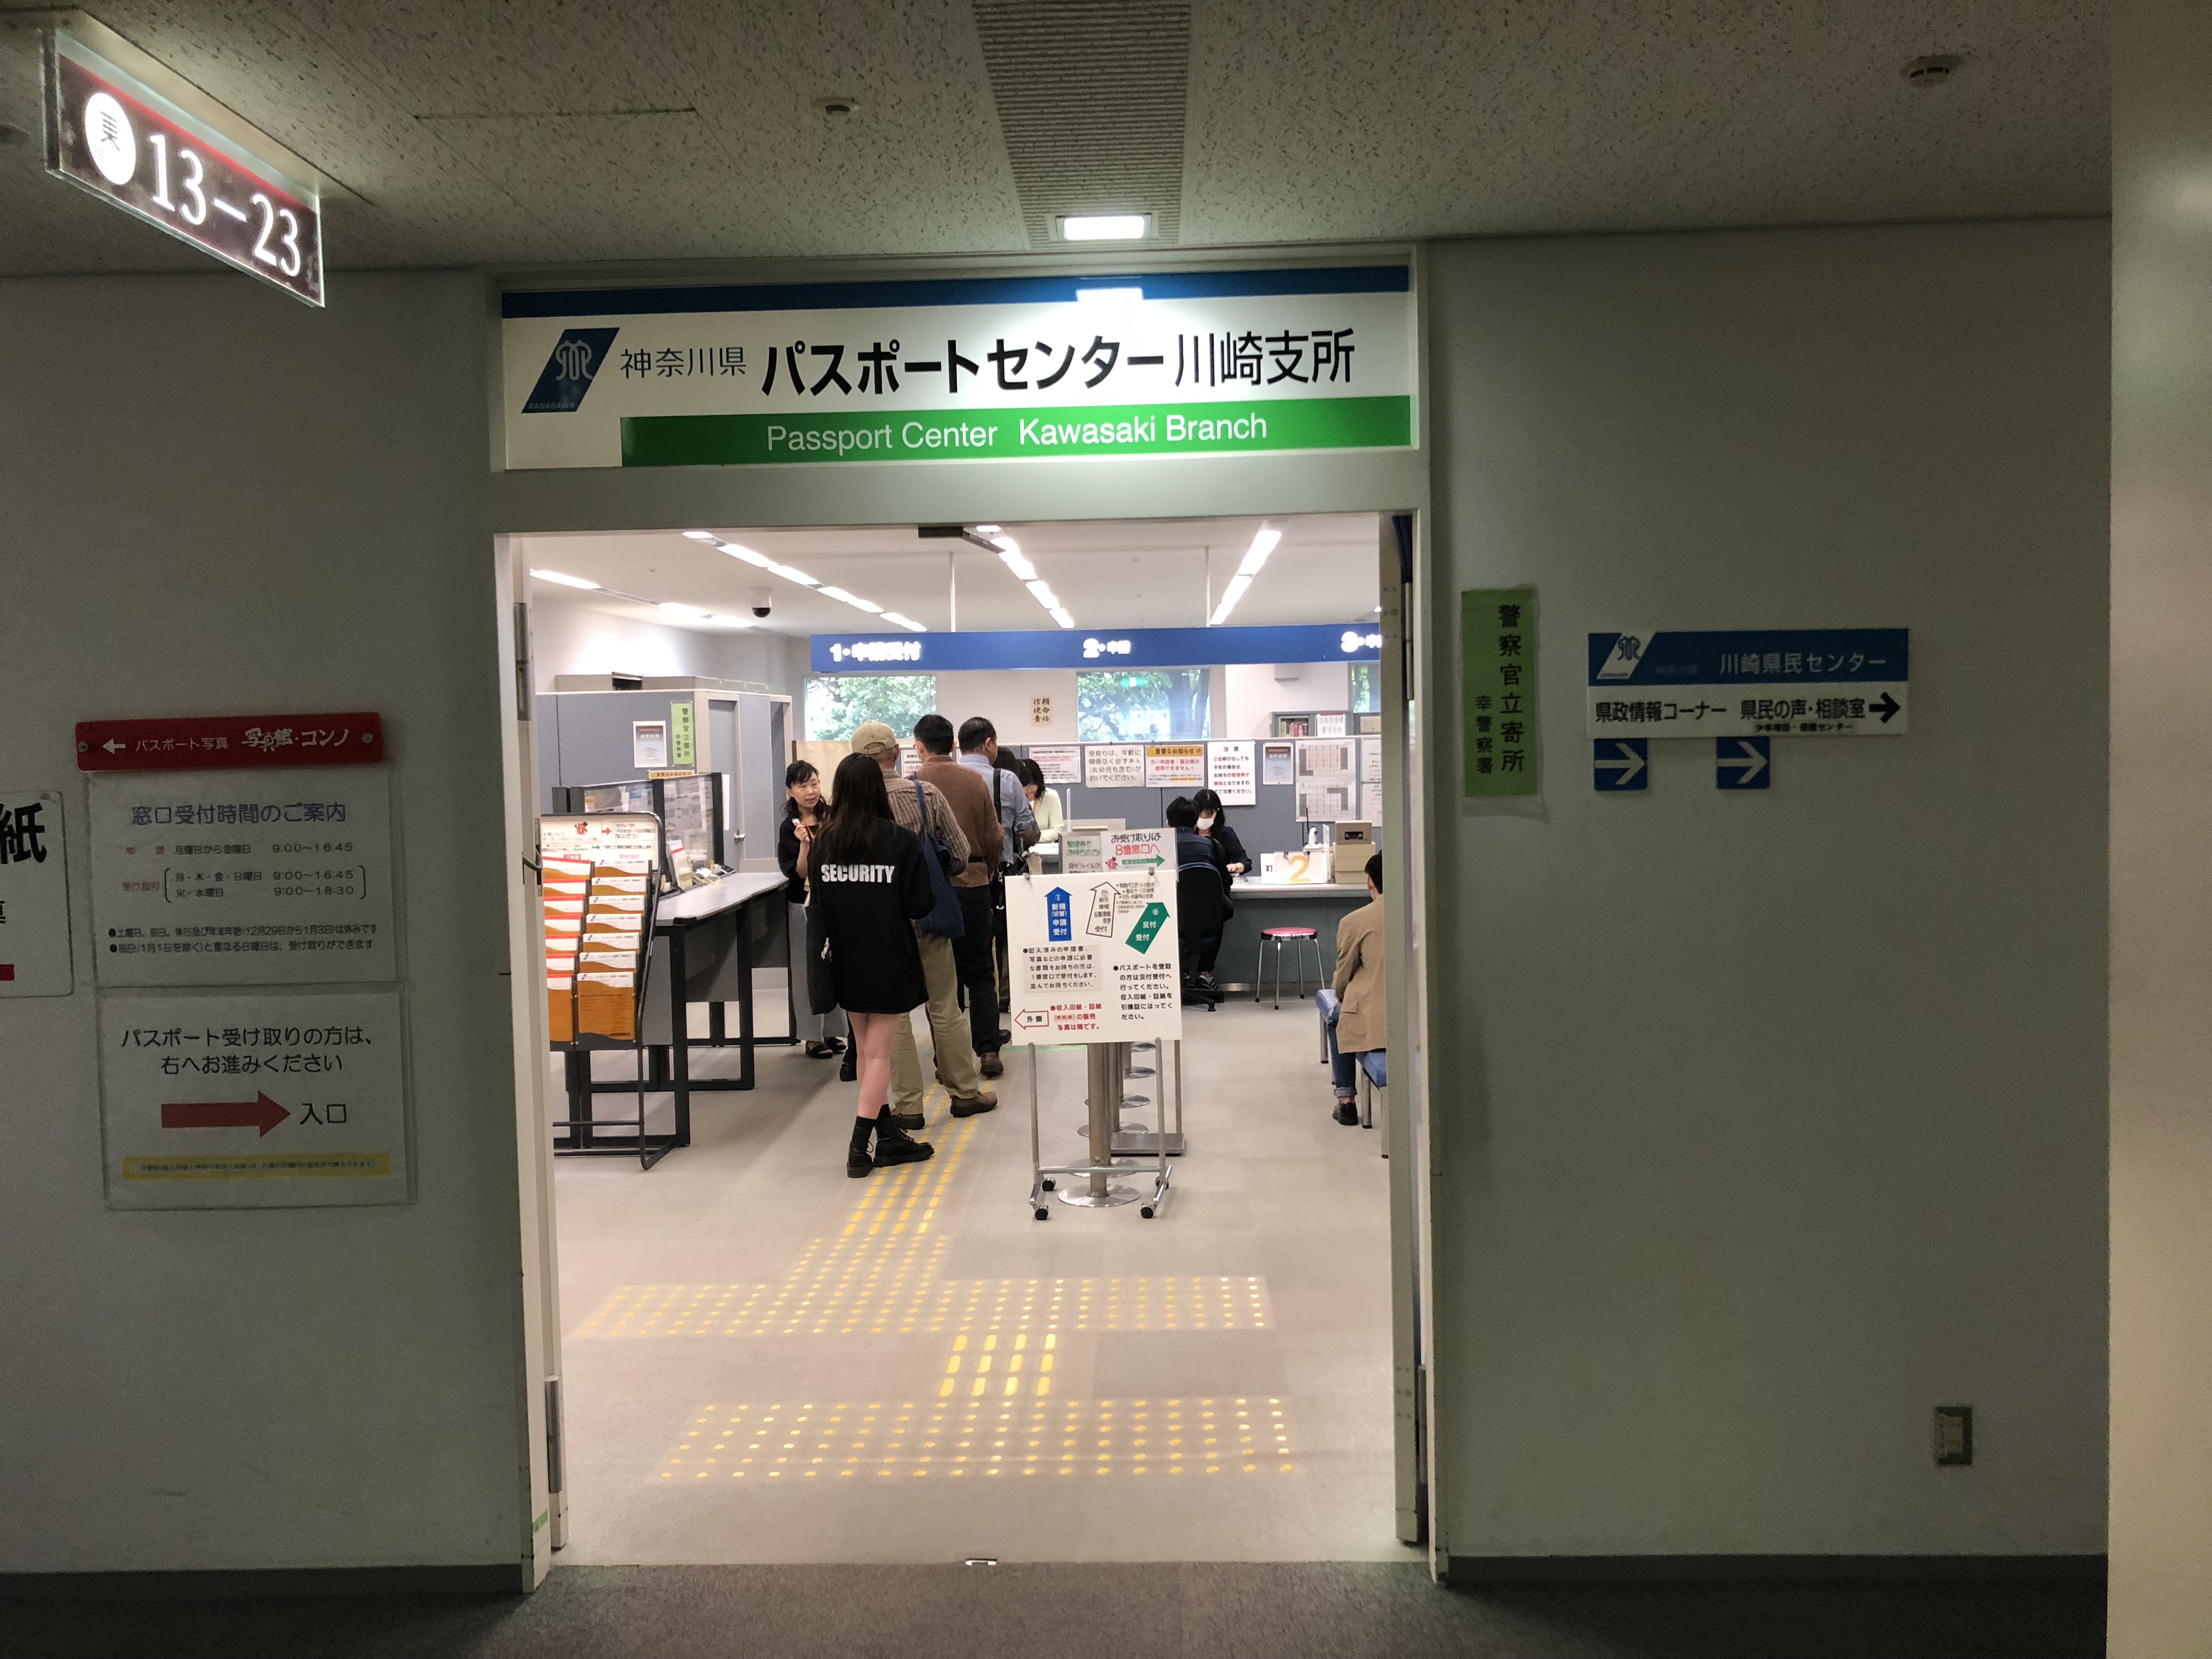 パスポート更新 神奈川県は7日間で受取可能 残存期間に注意 戸籍謄本や住民票は不要 アジアの歩き方